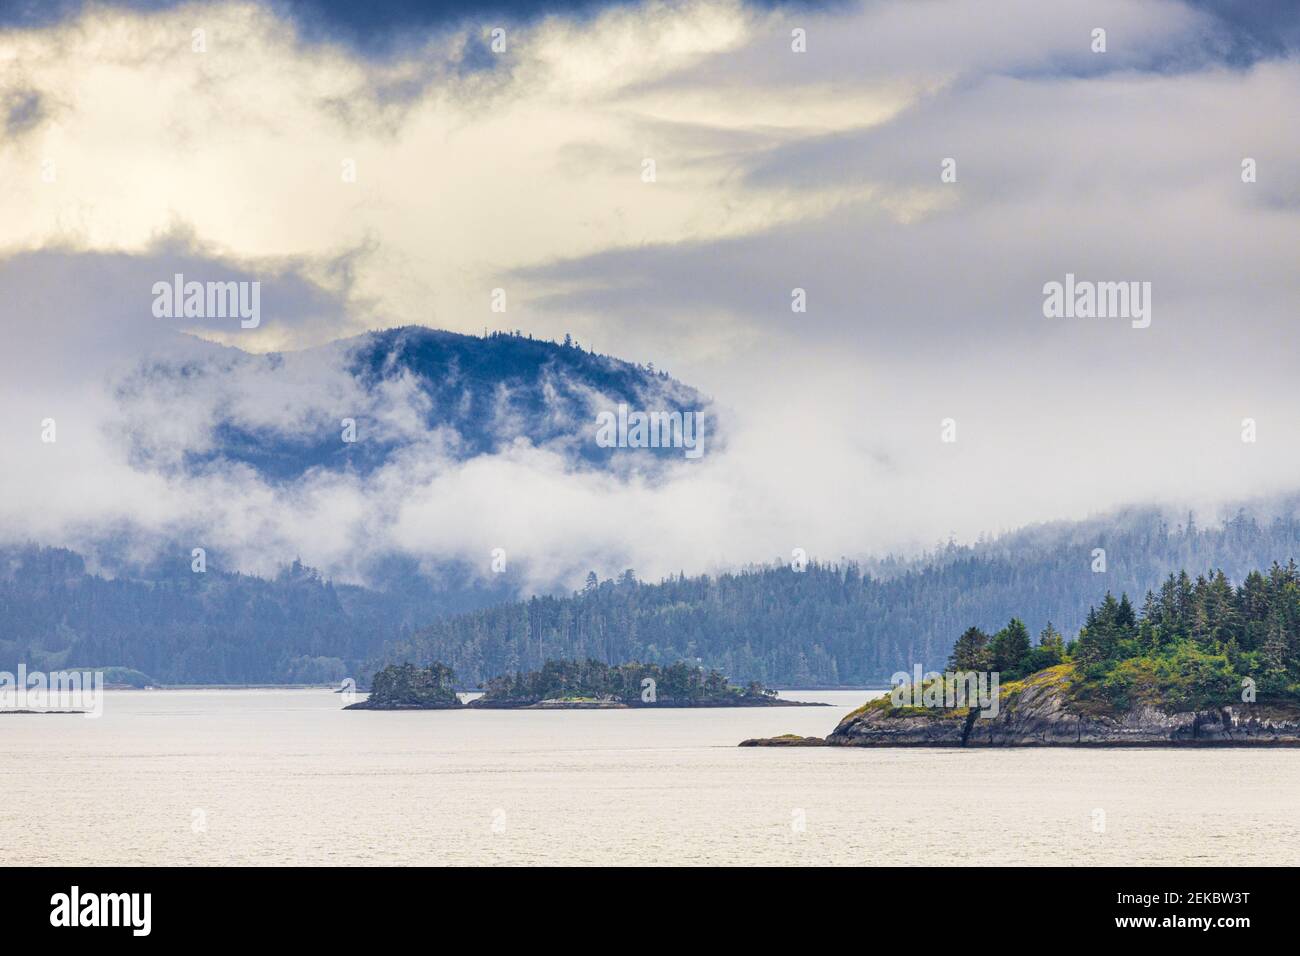 En Alert Bay, en el extremo norte de la isla de Vancouver, Columbia Británica, Canadá - visto desde un crucero que navega por el Paso Interior. Foto de stock